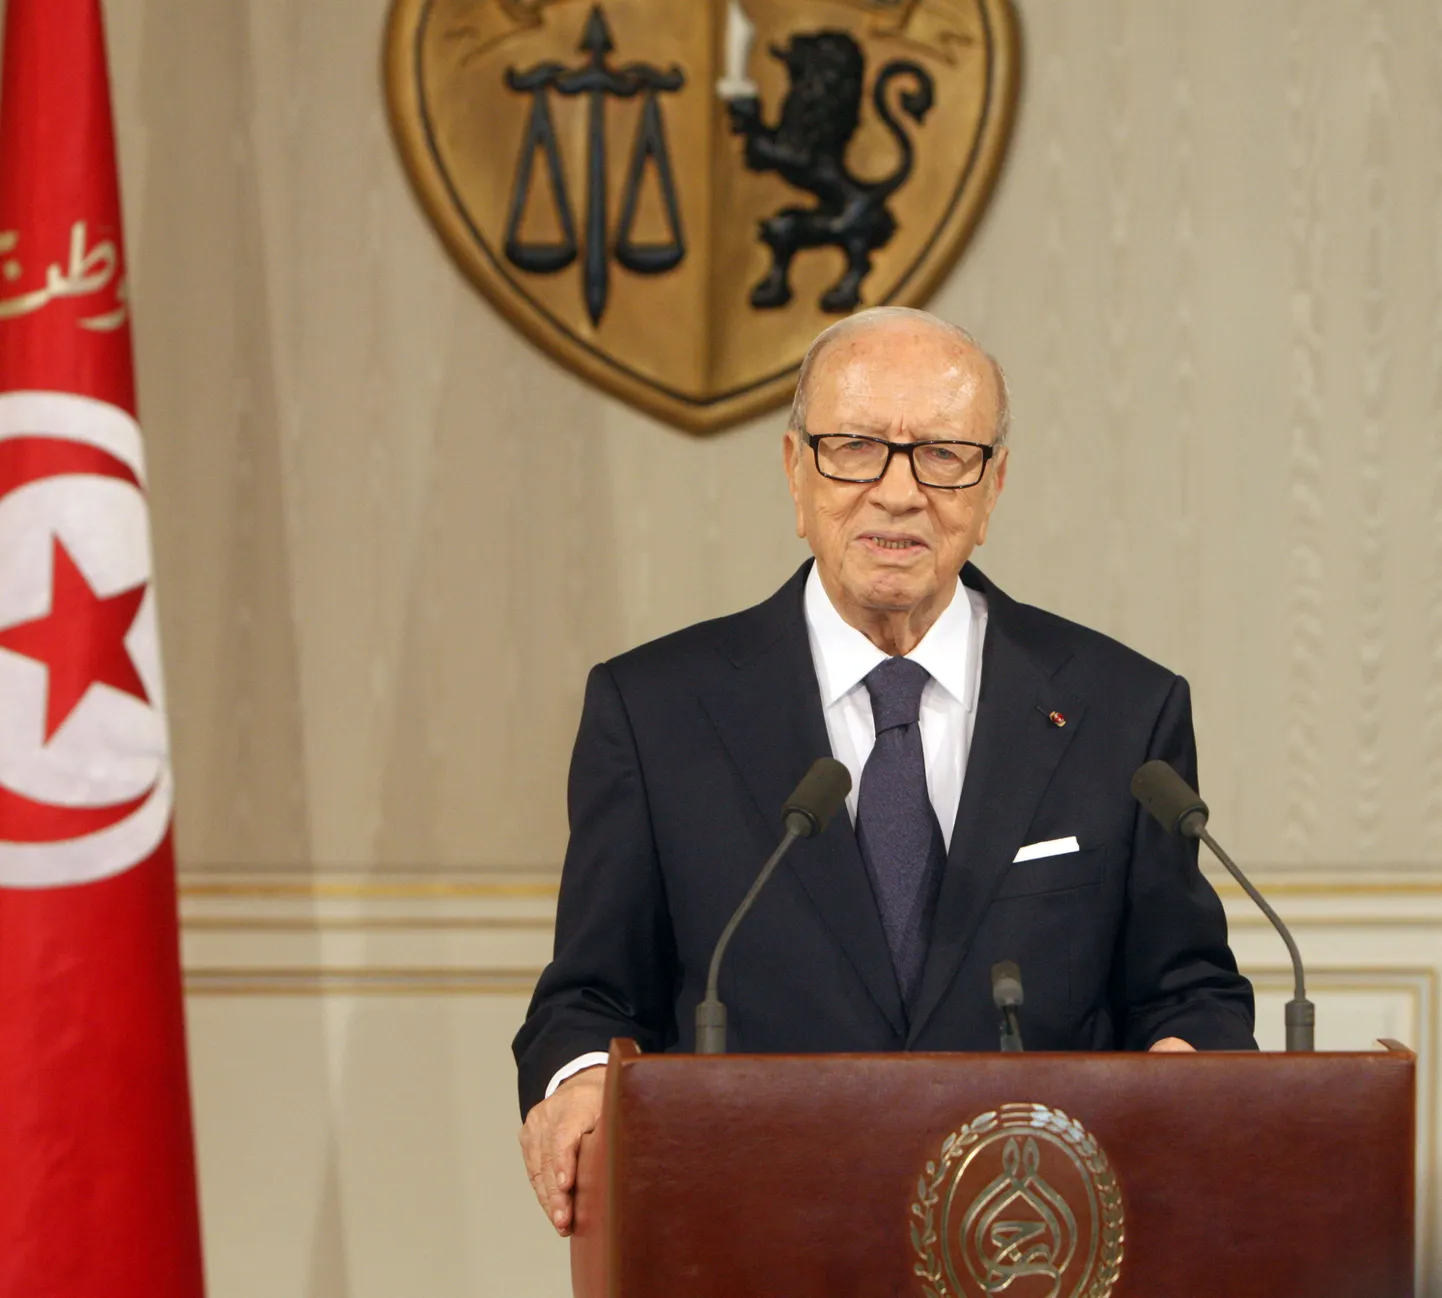 Tuneesia president Béji Caïd Essebsi